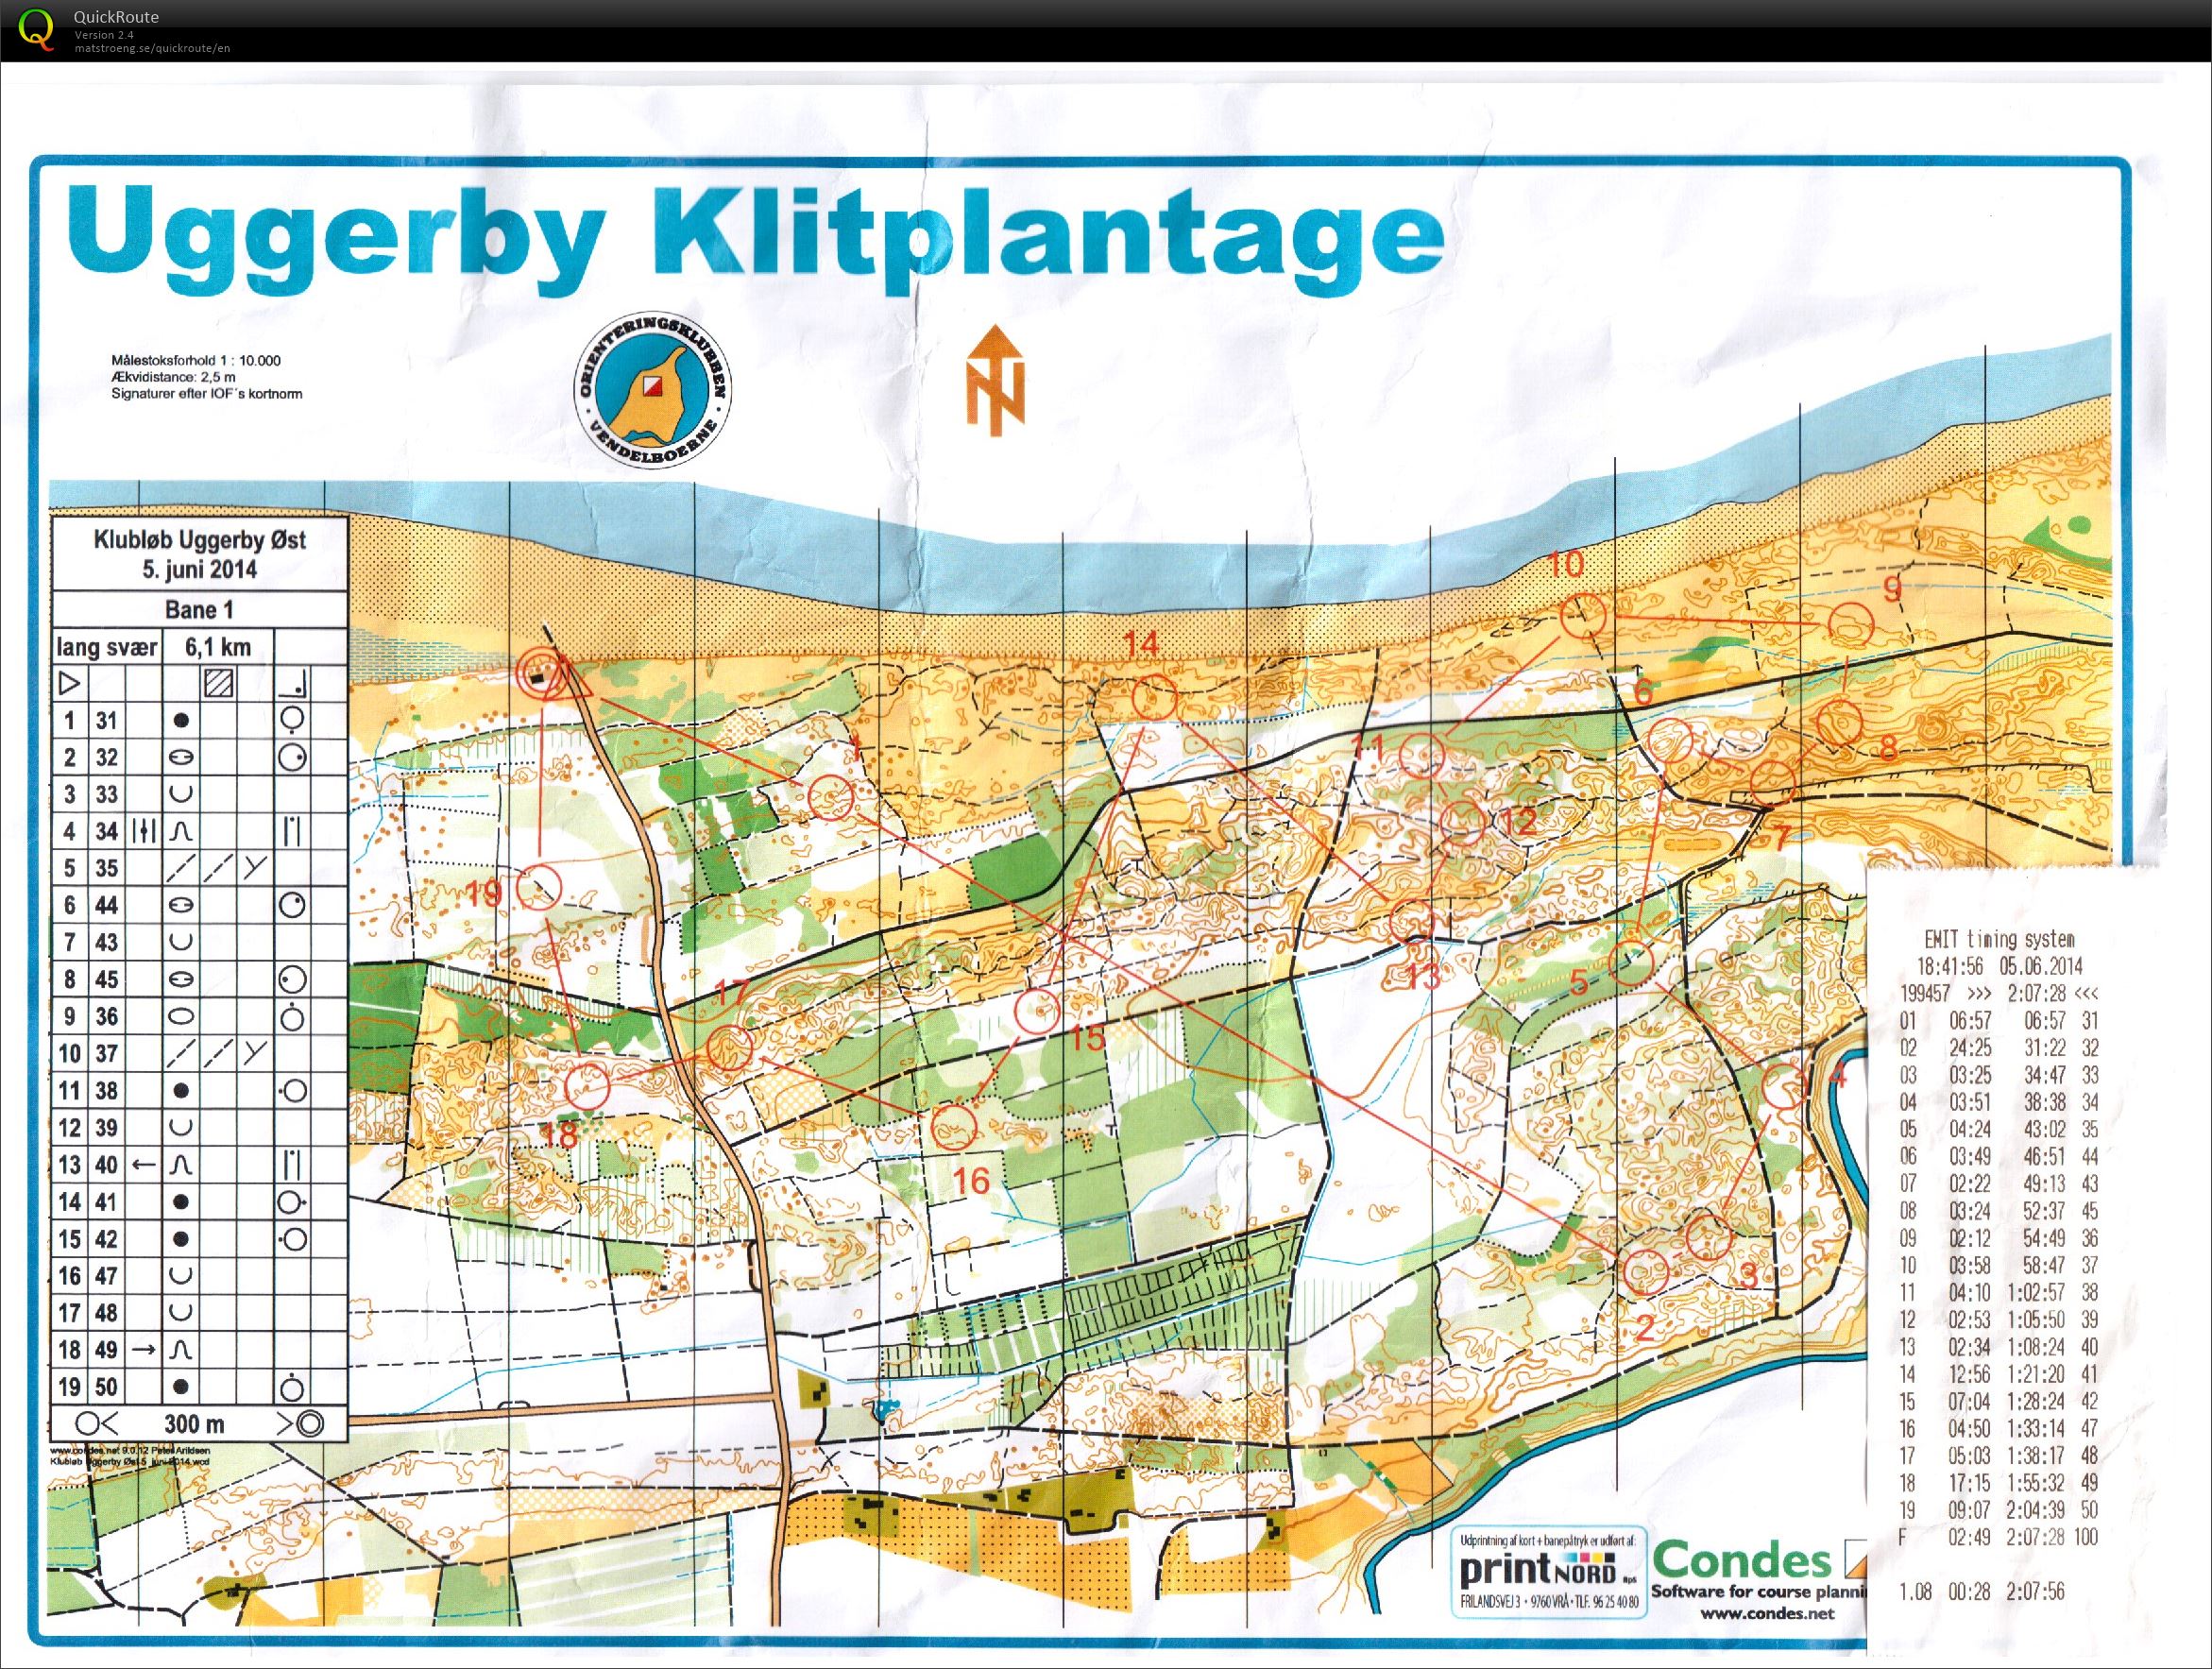 Uggerby Klitplantage, 05-06-2014 (2014-06-05)